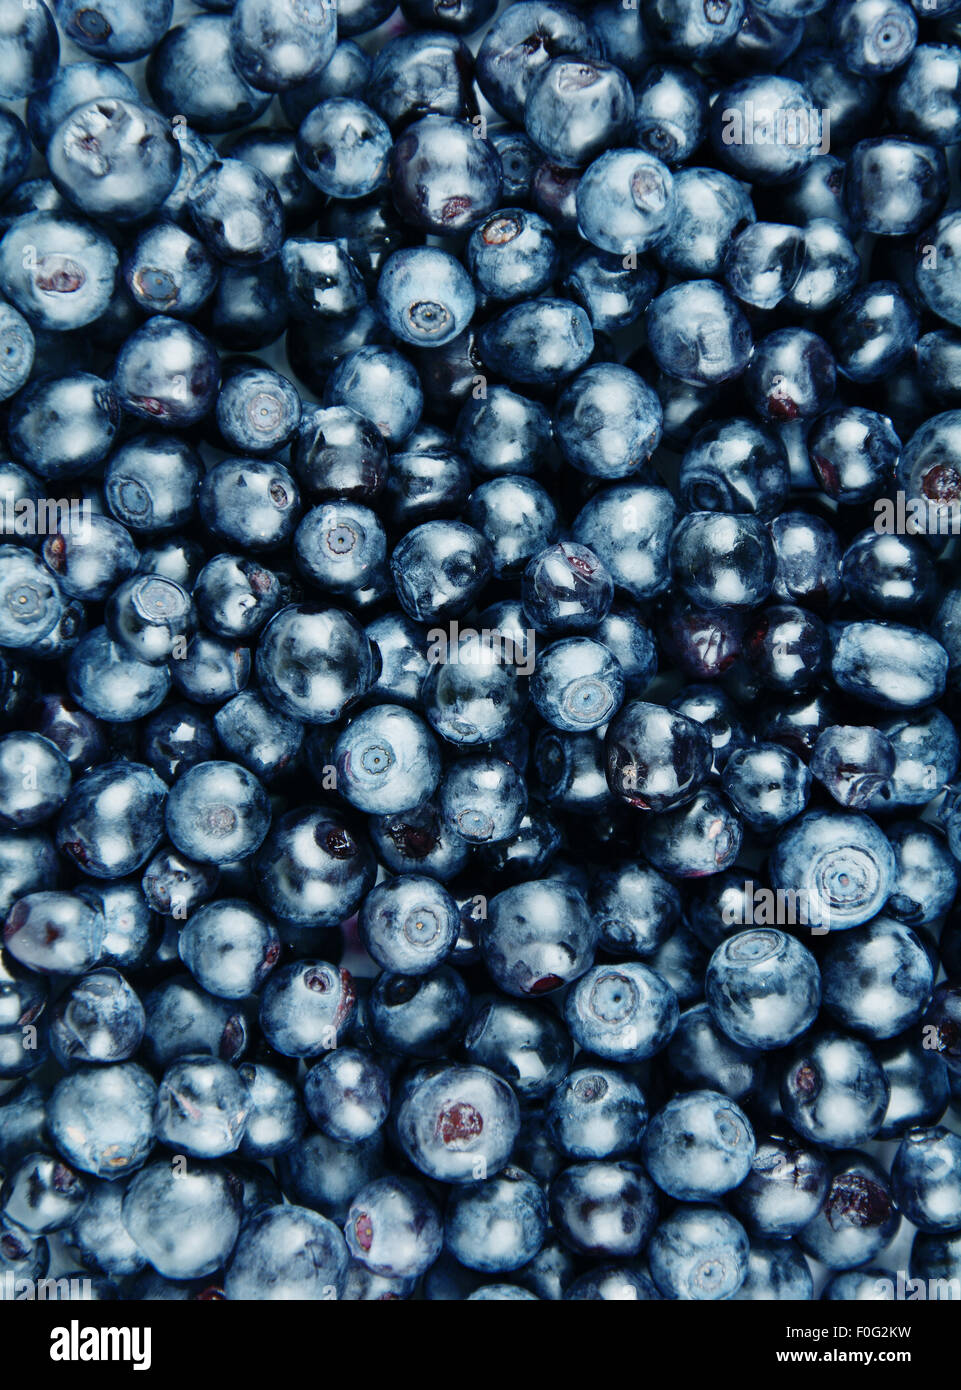 Fresh sweet juicy blueberry background closeup shot Stock Photo